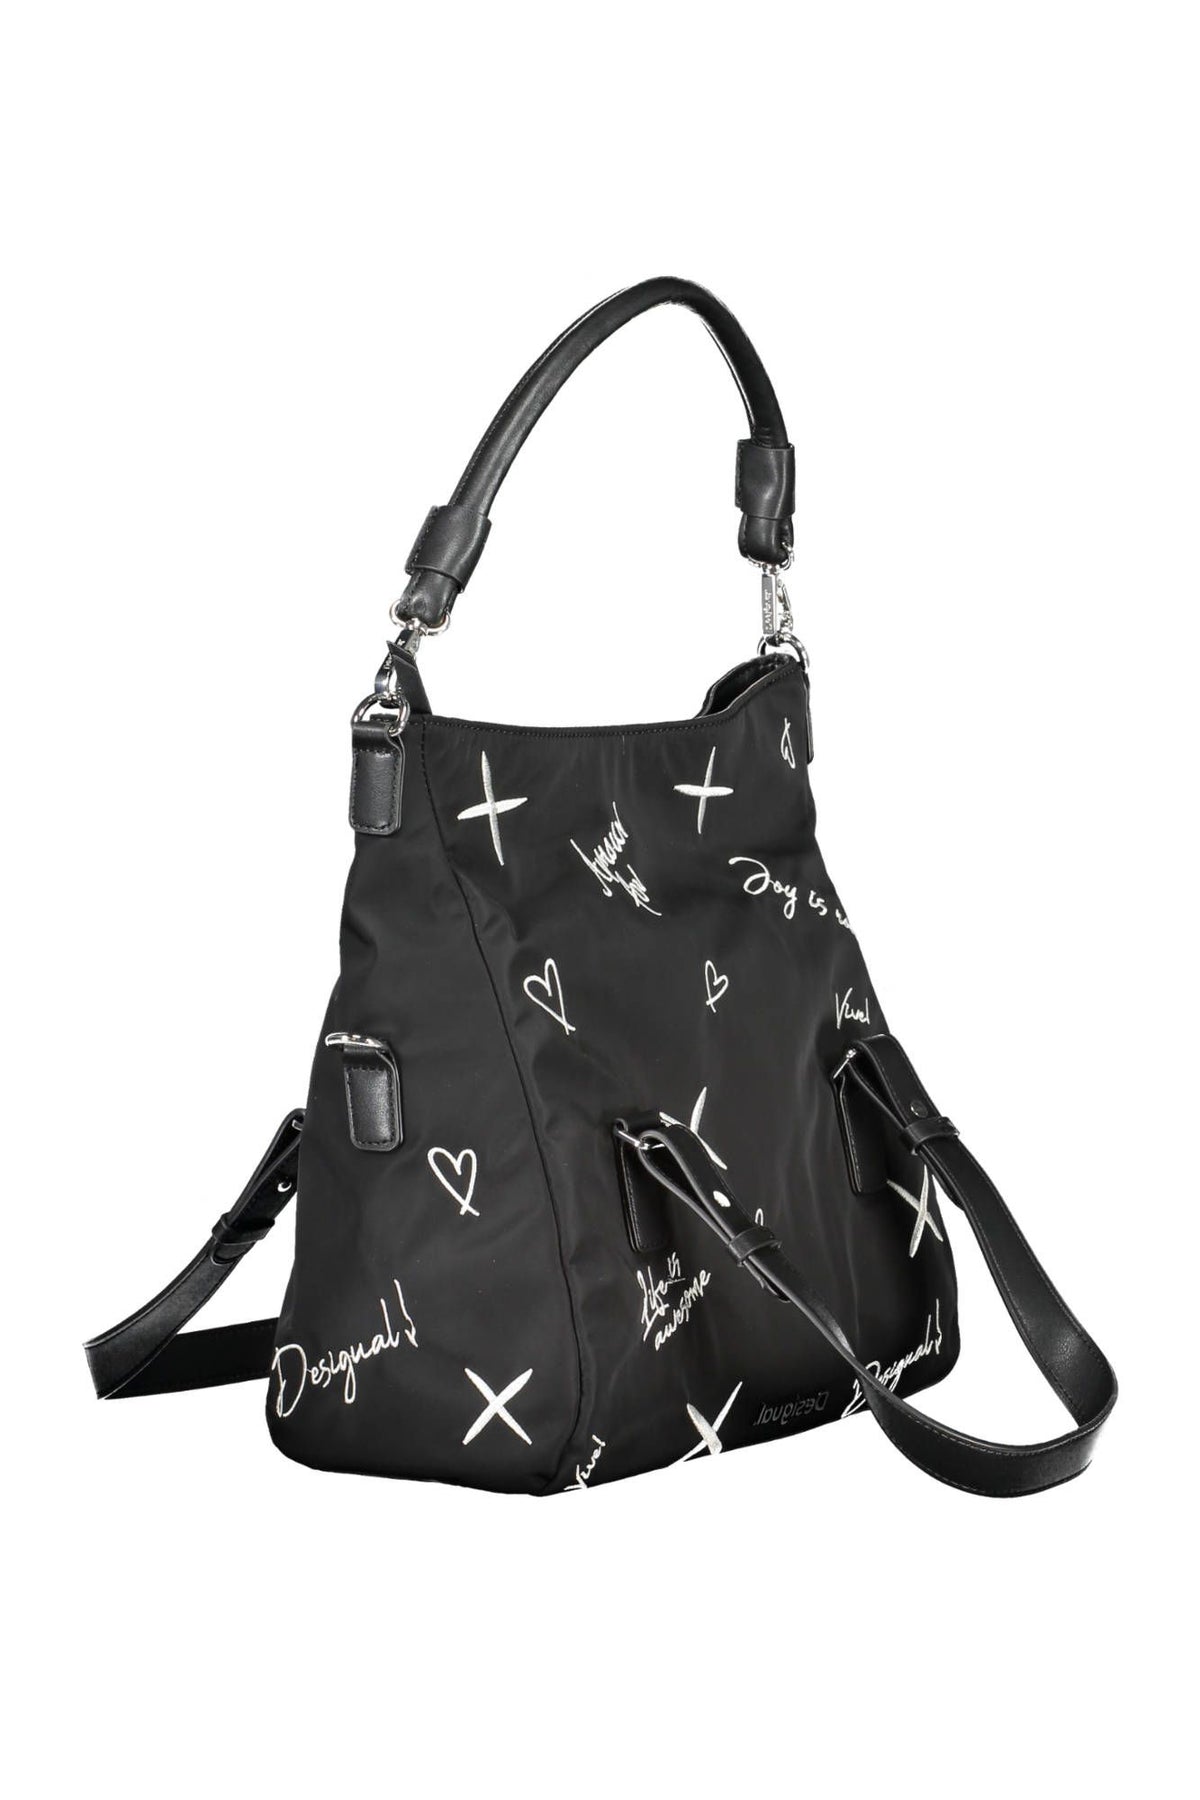 Desigual – Elegante, bestickte schwarze Handtasche mit vielseitigen Riemen